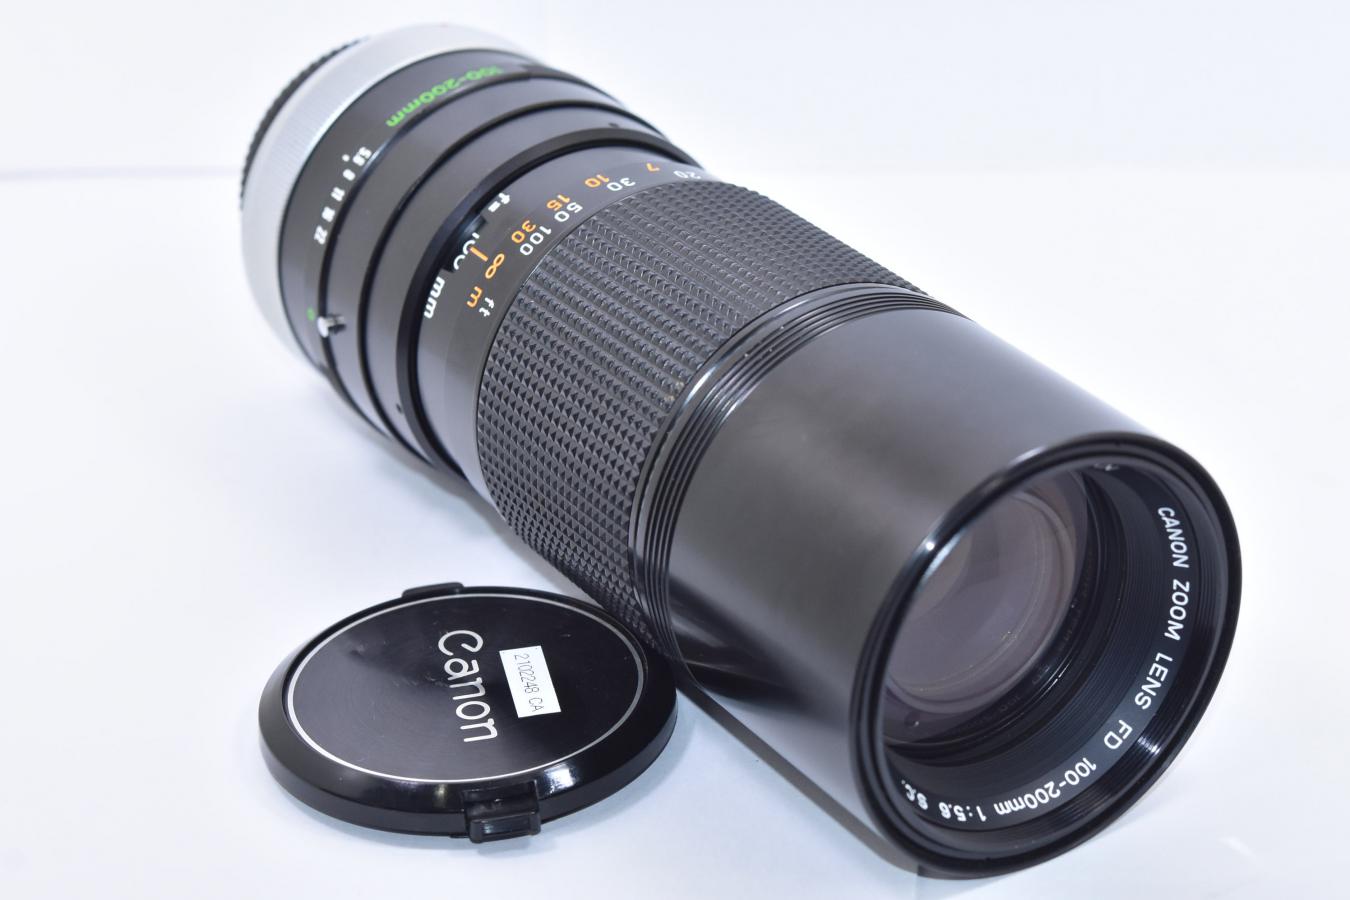 【B級特価品】 Canon FD 100-200mm F5.6 S.C.